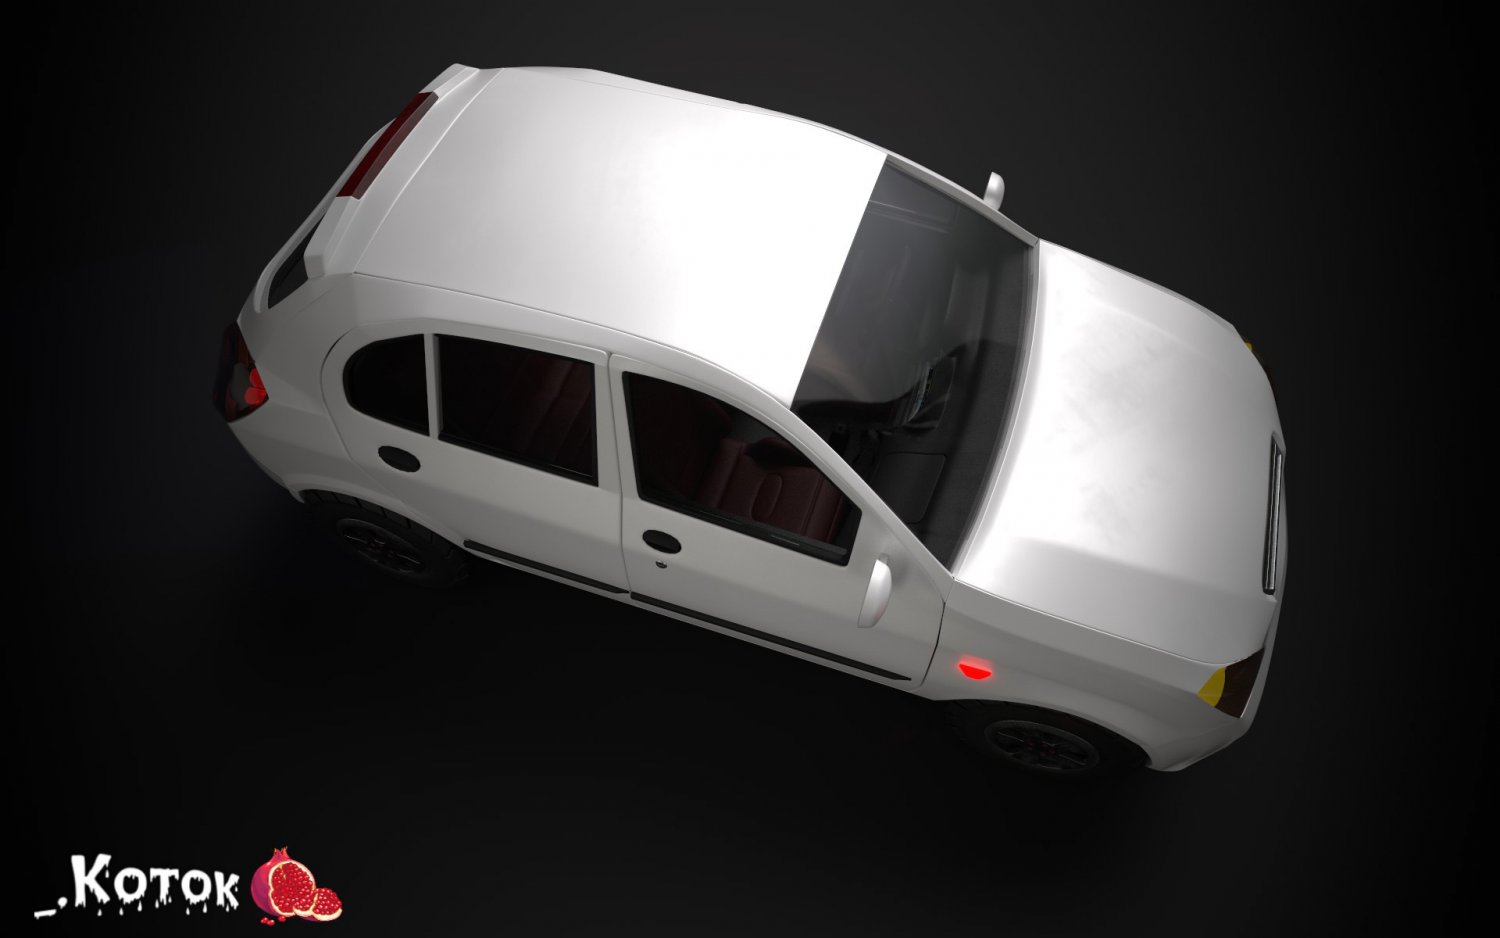 Carro grátis 3D Modelos baixar - Free3D